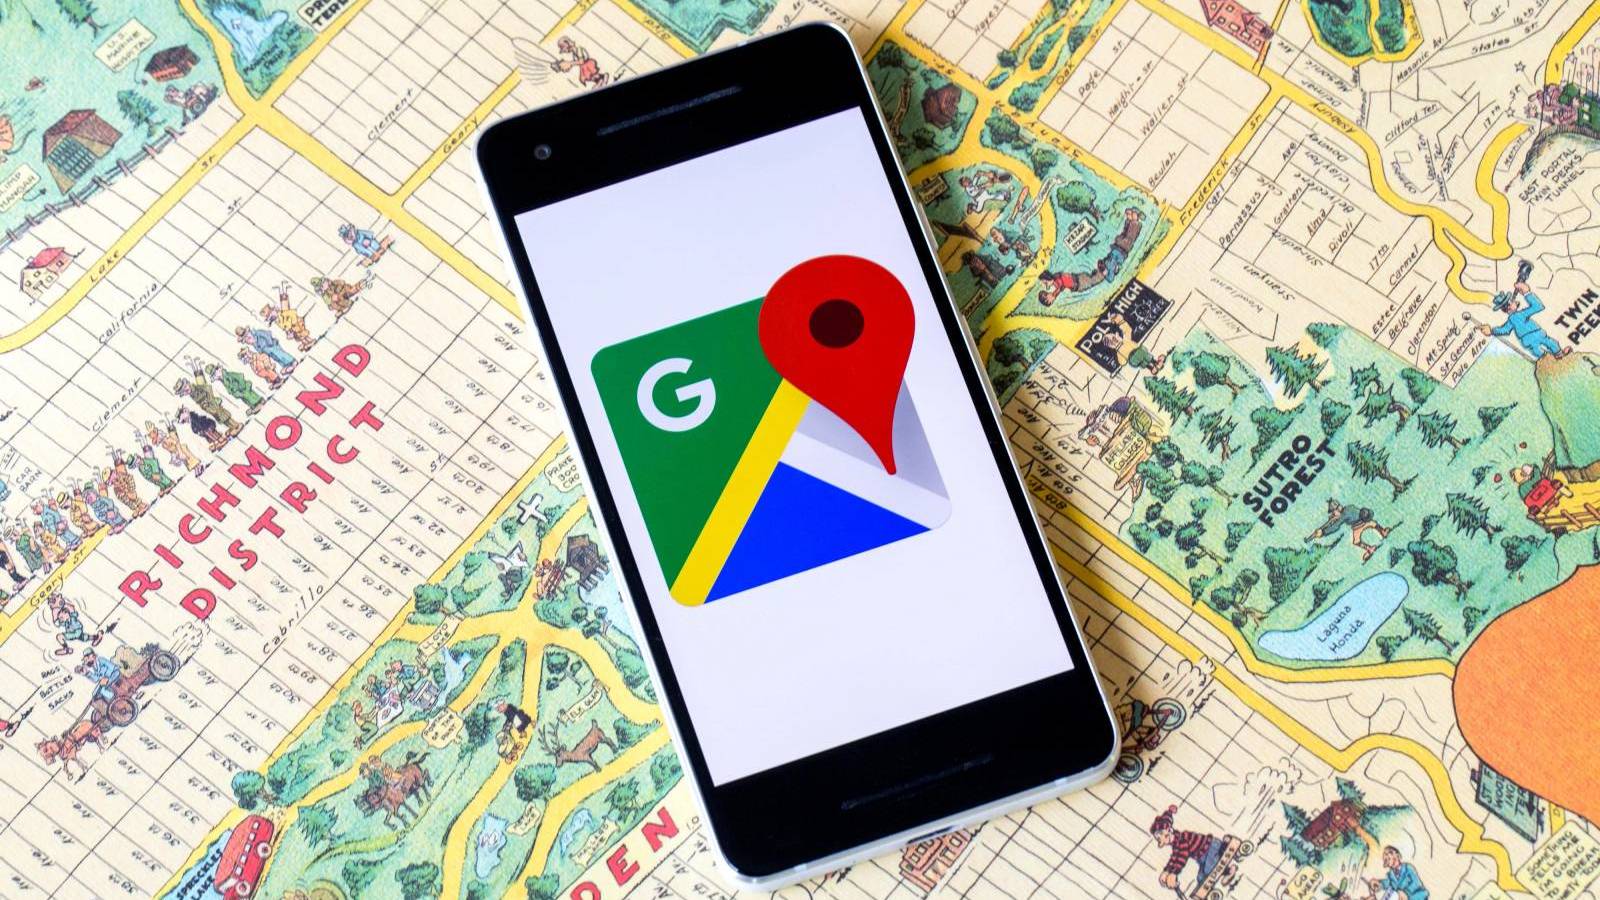 Das Google Maps Update wurde veröffentlicht, mit welchen Änderungen es jetzt kommt